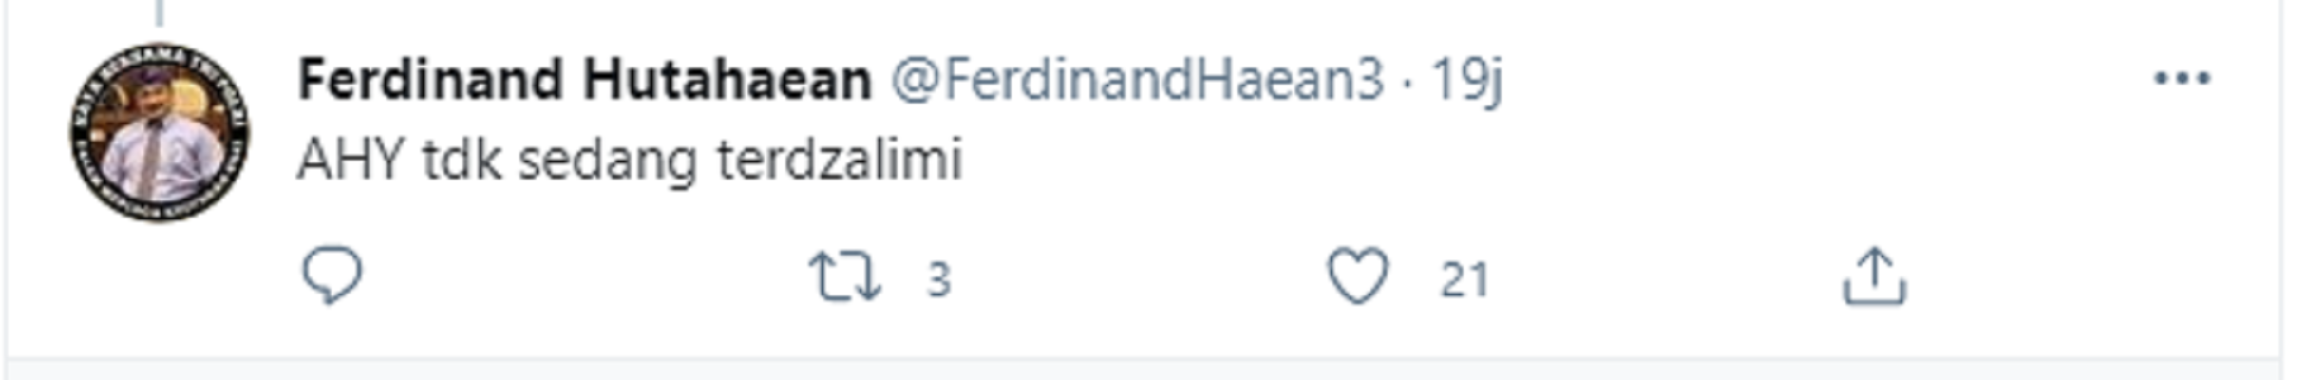 Tangkapan layar citan Ferdinand Hutahaean.*